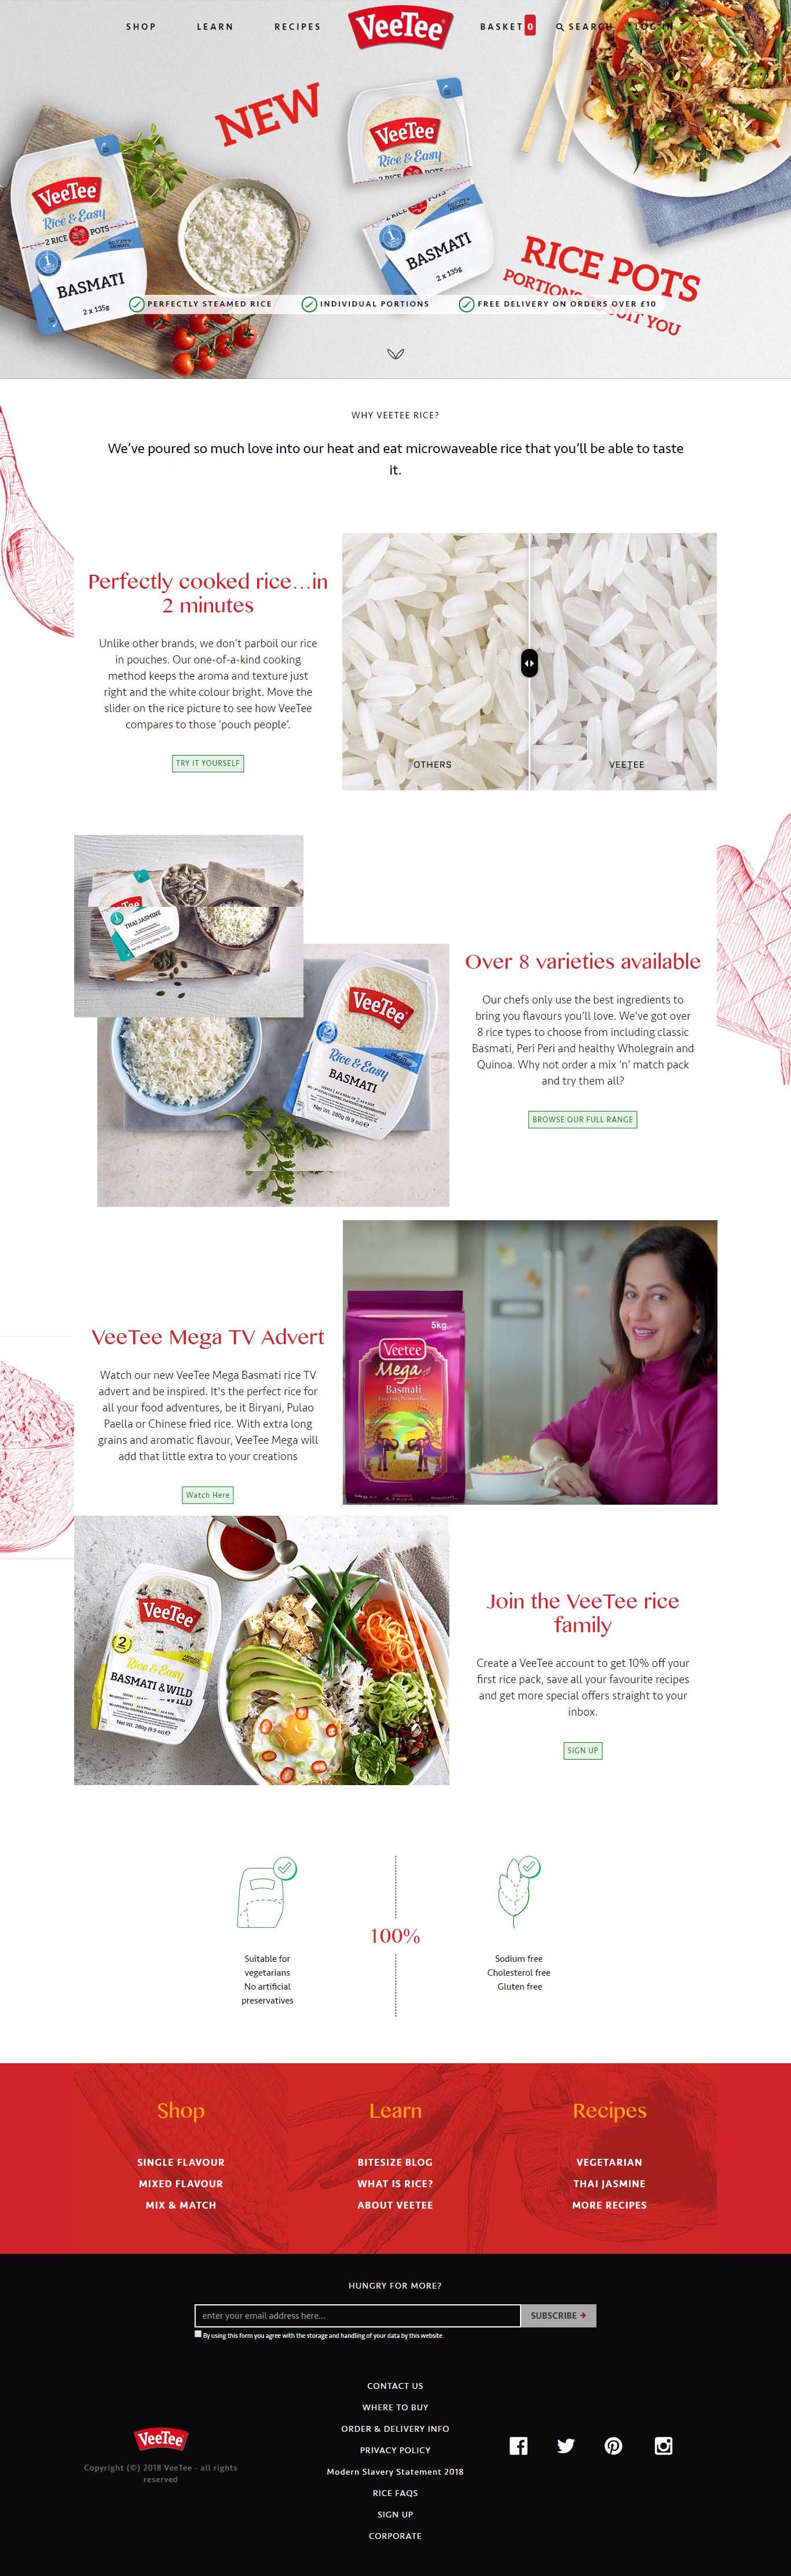 VeeTee foods homepage